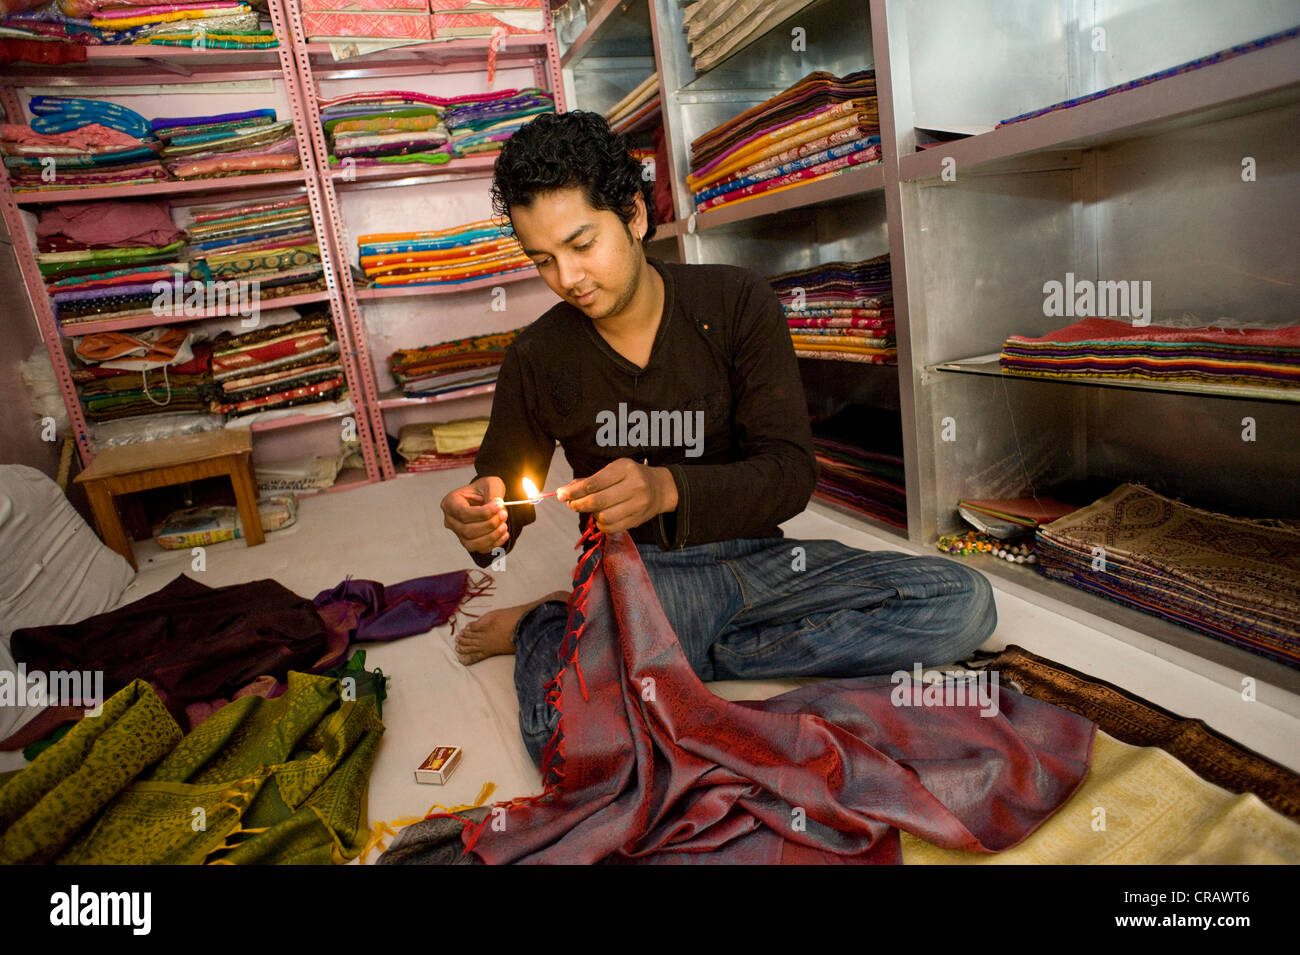 Vendeur prouvant l'authenticité la soie avec un test de la flamme, de la vieille ville de Varanasi, Uttar Pradesh, Inde, Asie Banque D'Images